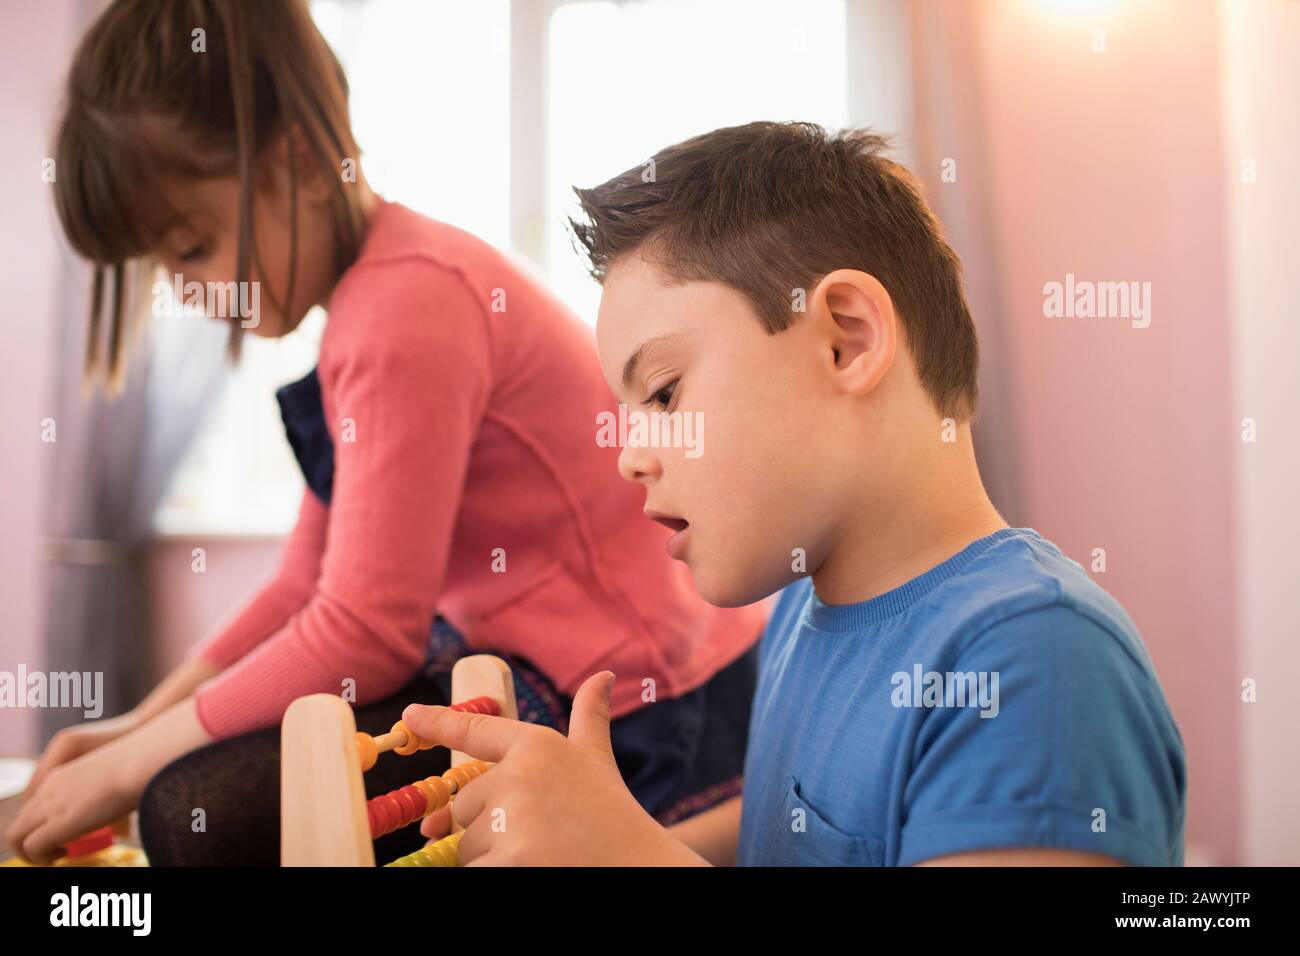 Curieux garçon avec le syndrome De Down jouant avec le jouet Banque D'Images